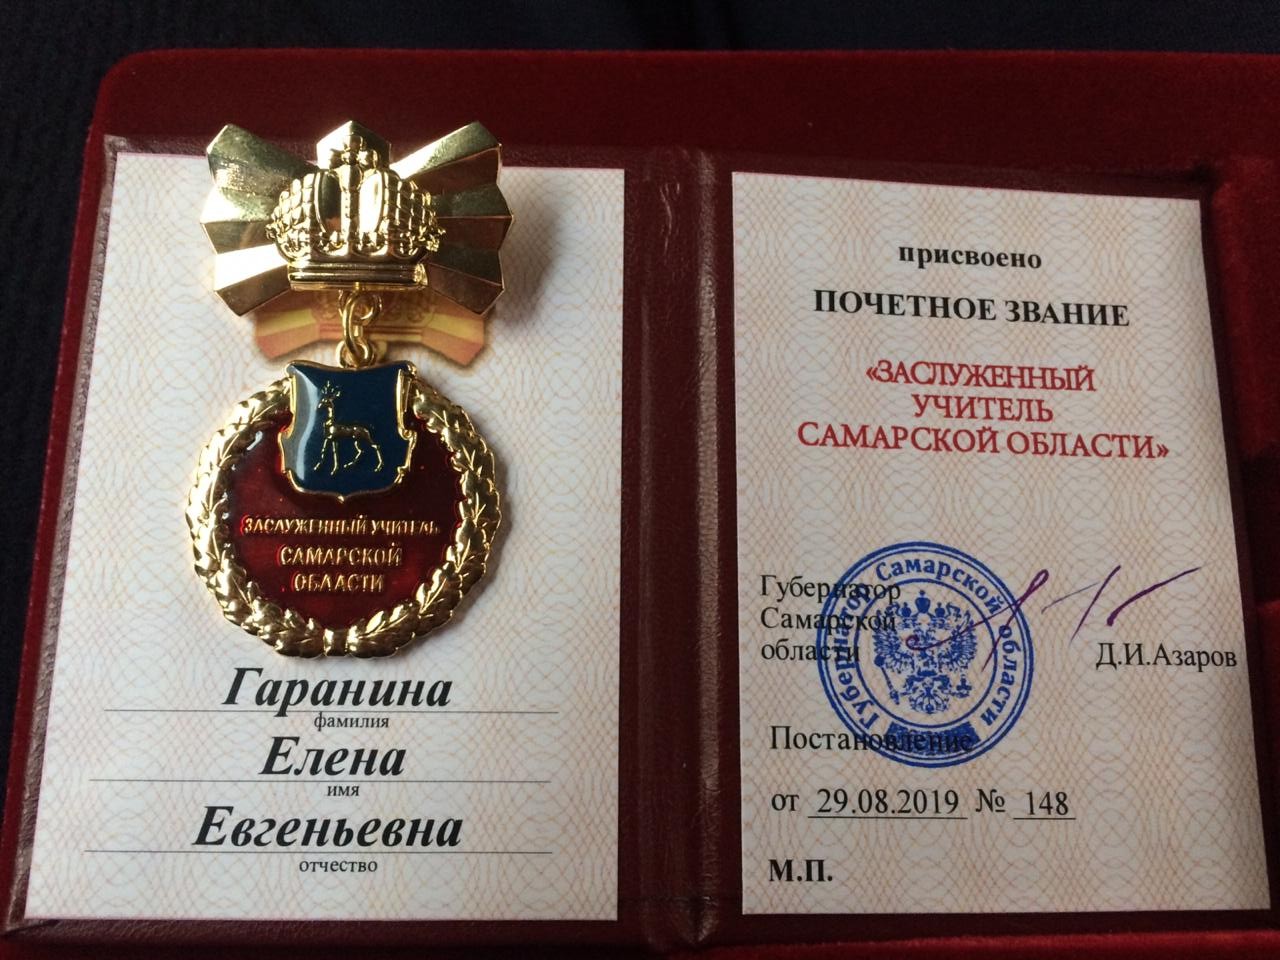 Гараниной Елене Евгеньевне присвоено почетное звание Заслуженный работник образования Самарской области